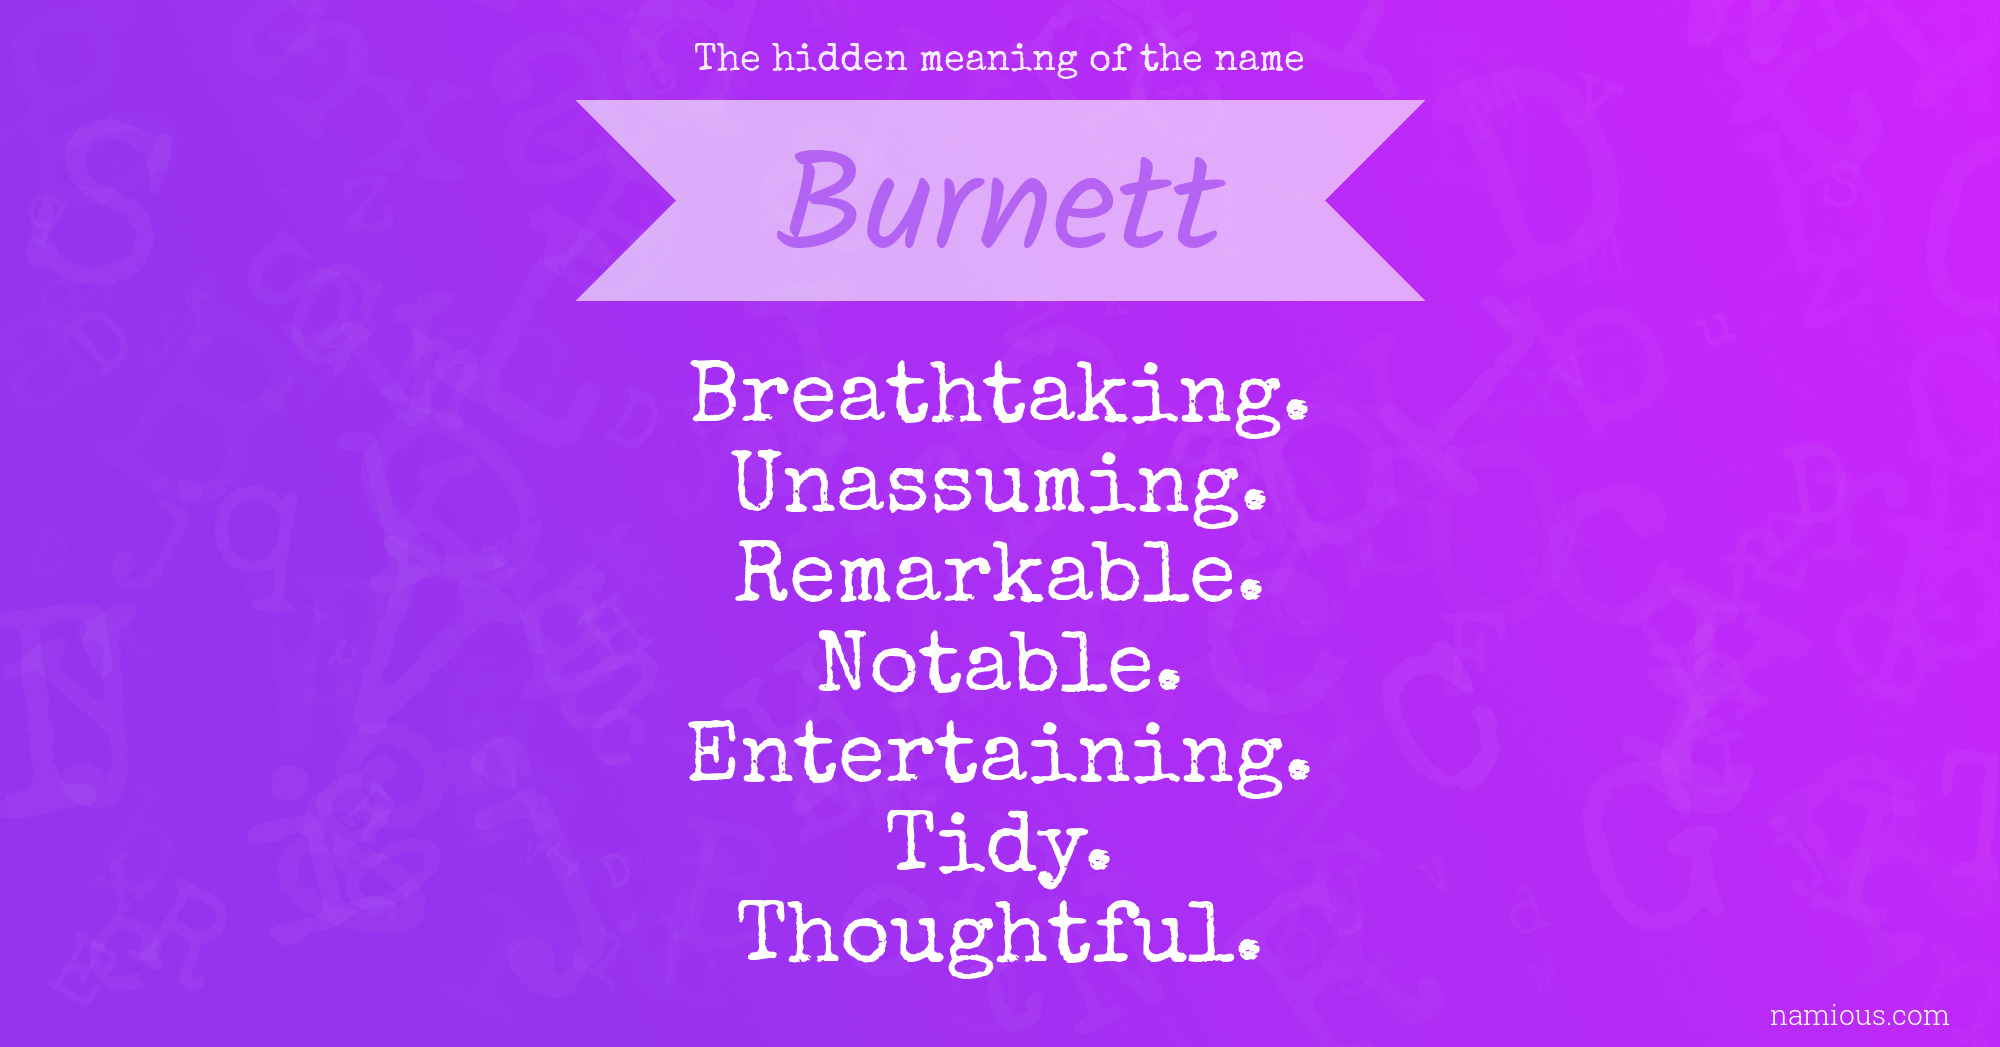 The hidden meaning of the name Burnett